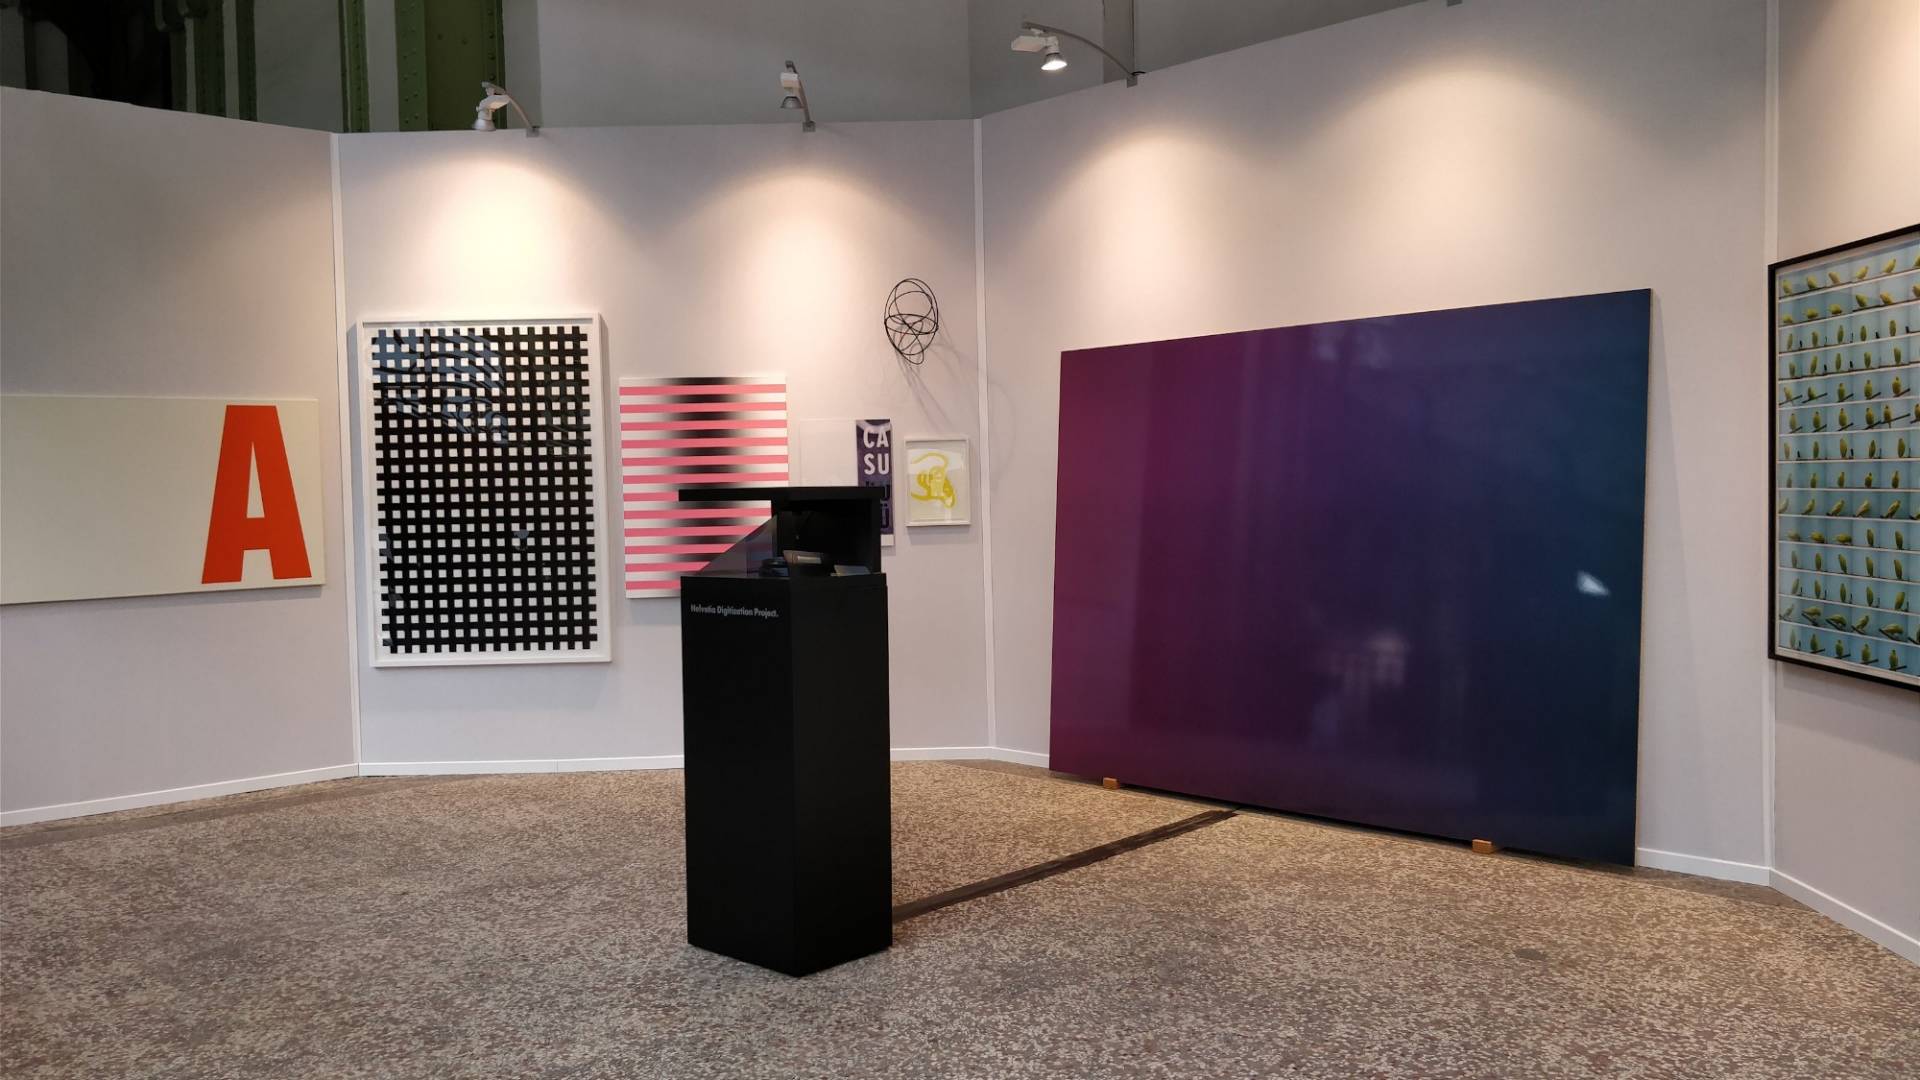 Sur l’image, on voit diverses œuvres de la collection d’art Helvetia, exposées au salon Art Paris Art Fair 2018.